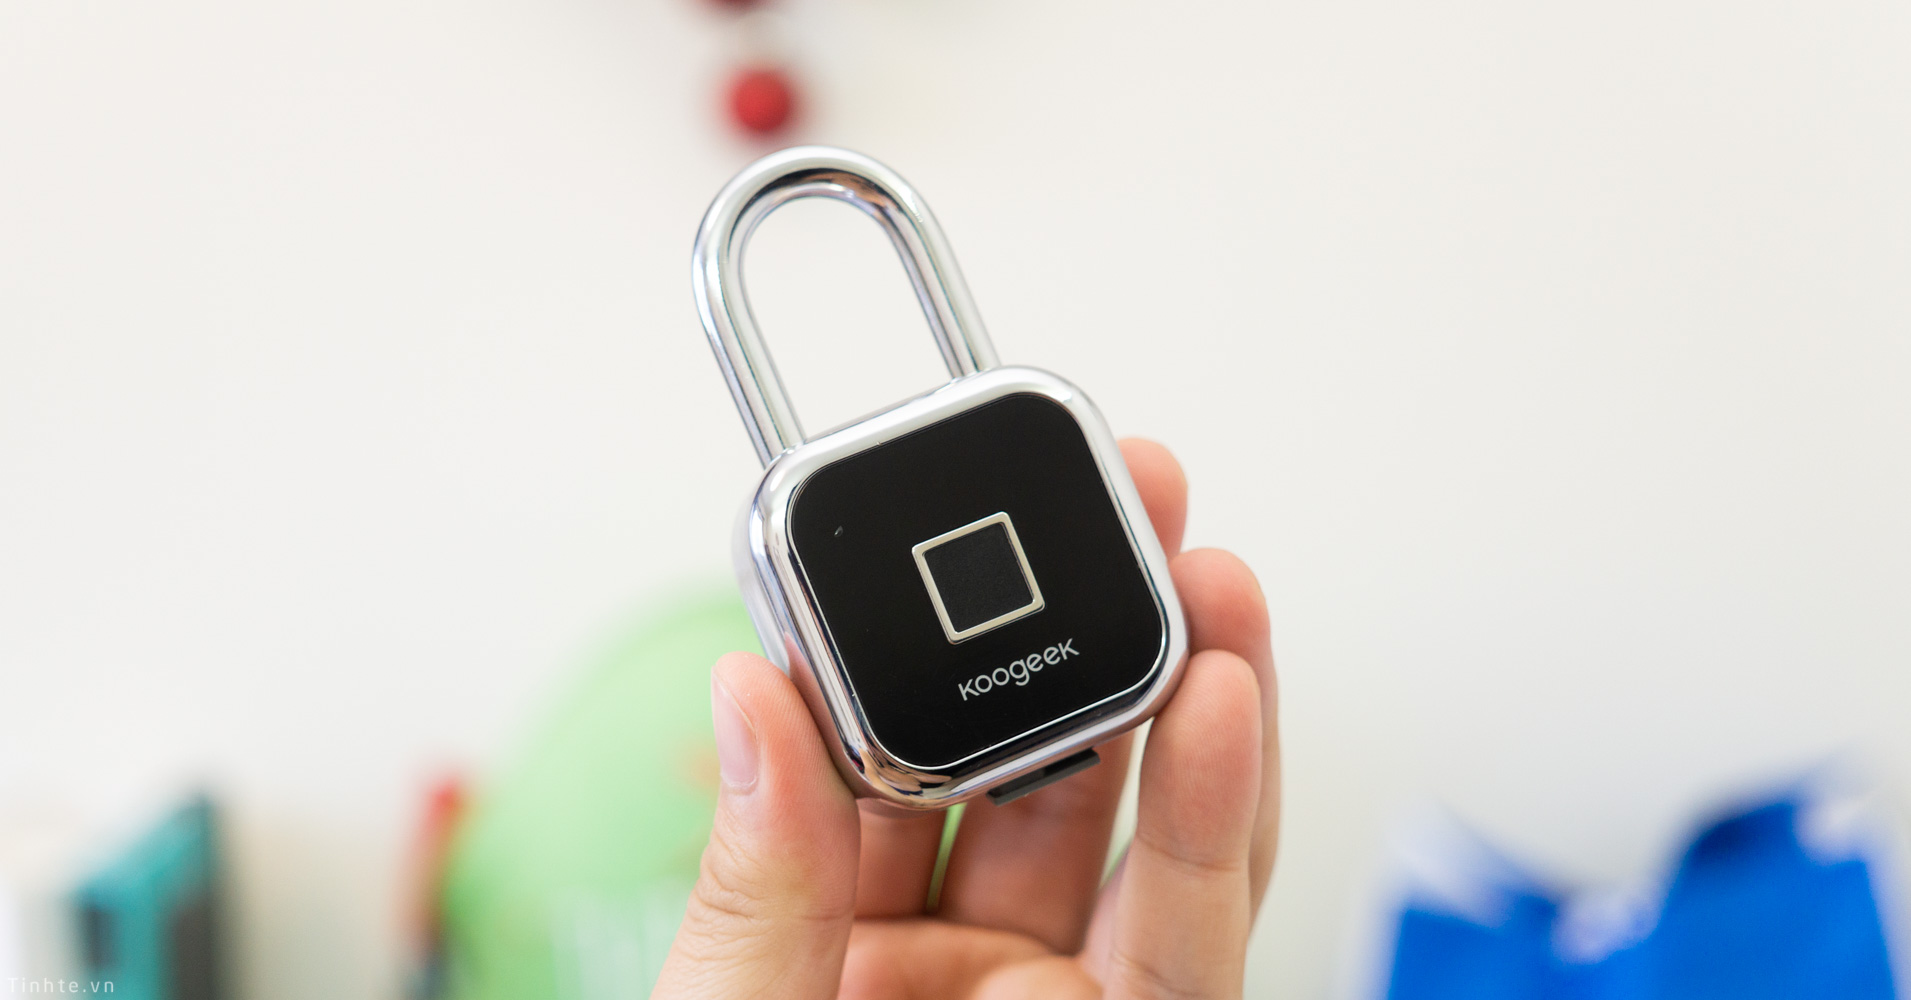 Ổ khóa thông minh vân tay và Apple HomeKit là một trong những sản phẩm tiên tiến nhất trong lĩnh vực nhà thông minh. Với sản phẩm này, bạn có thể mở khóa cửa của mình chỉ bằng một lần chạm ngón tay và các thiết bị nhà thông minh được kết nối với hệ thống Apple HomeKit cũng có thể được điều khiển qua công nghệ này.